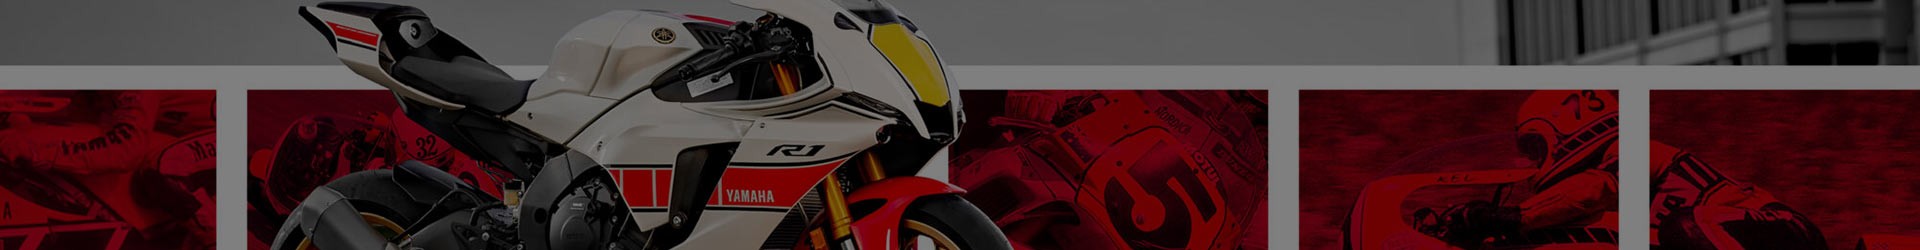 ACCESSOIRES YAMAHA SUPERSPORT R | Accessoires d'origine Yamaha Moto et Sccoter | YoushopYAM.fr